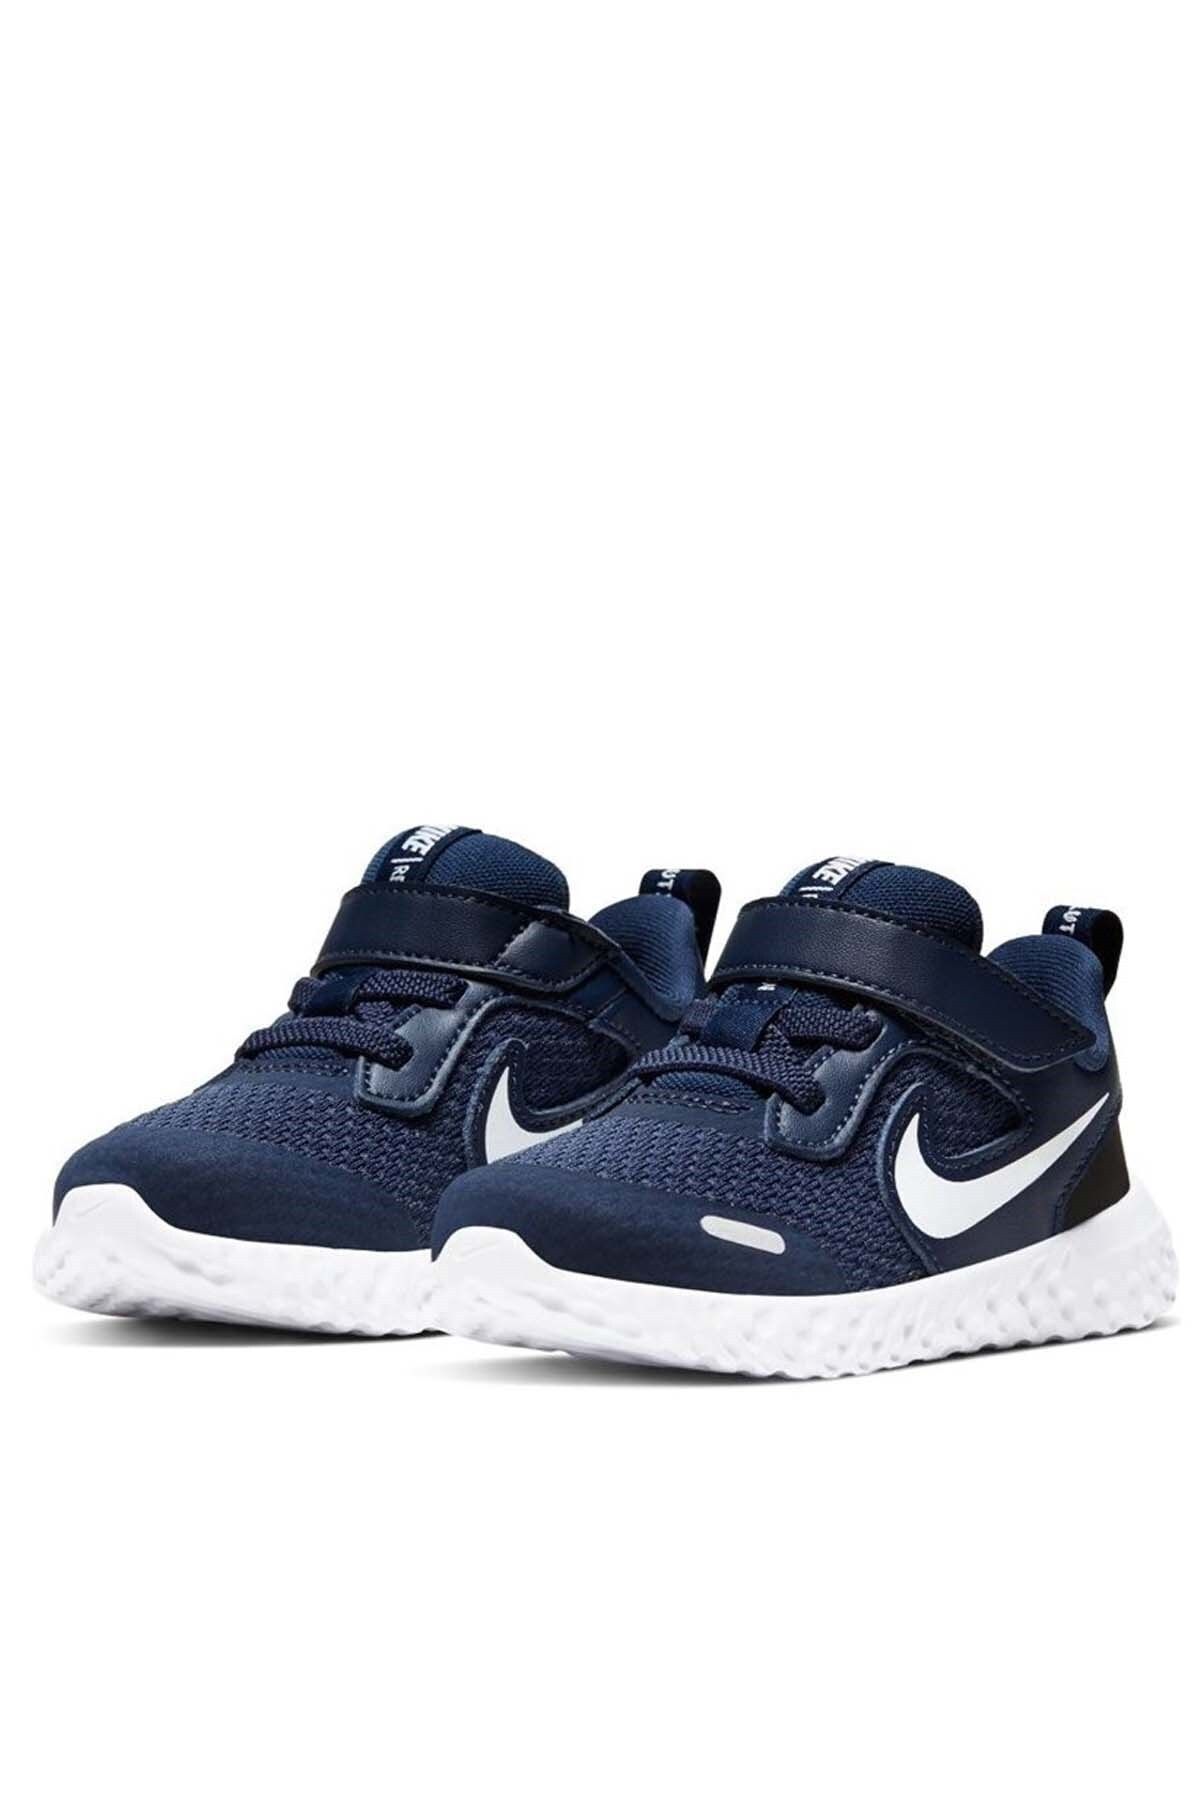 Nike Revolutıon 5 (Tdv) Çocuk Yürüyüş Koşu Ayakkabı Bq5673-402-lacivert